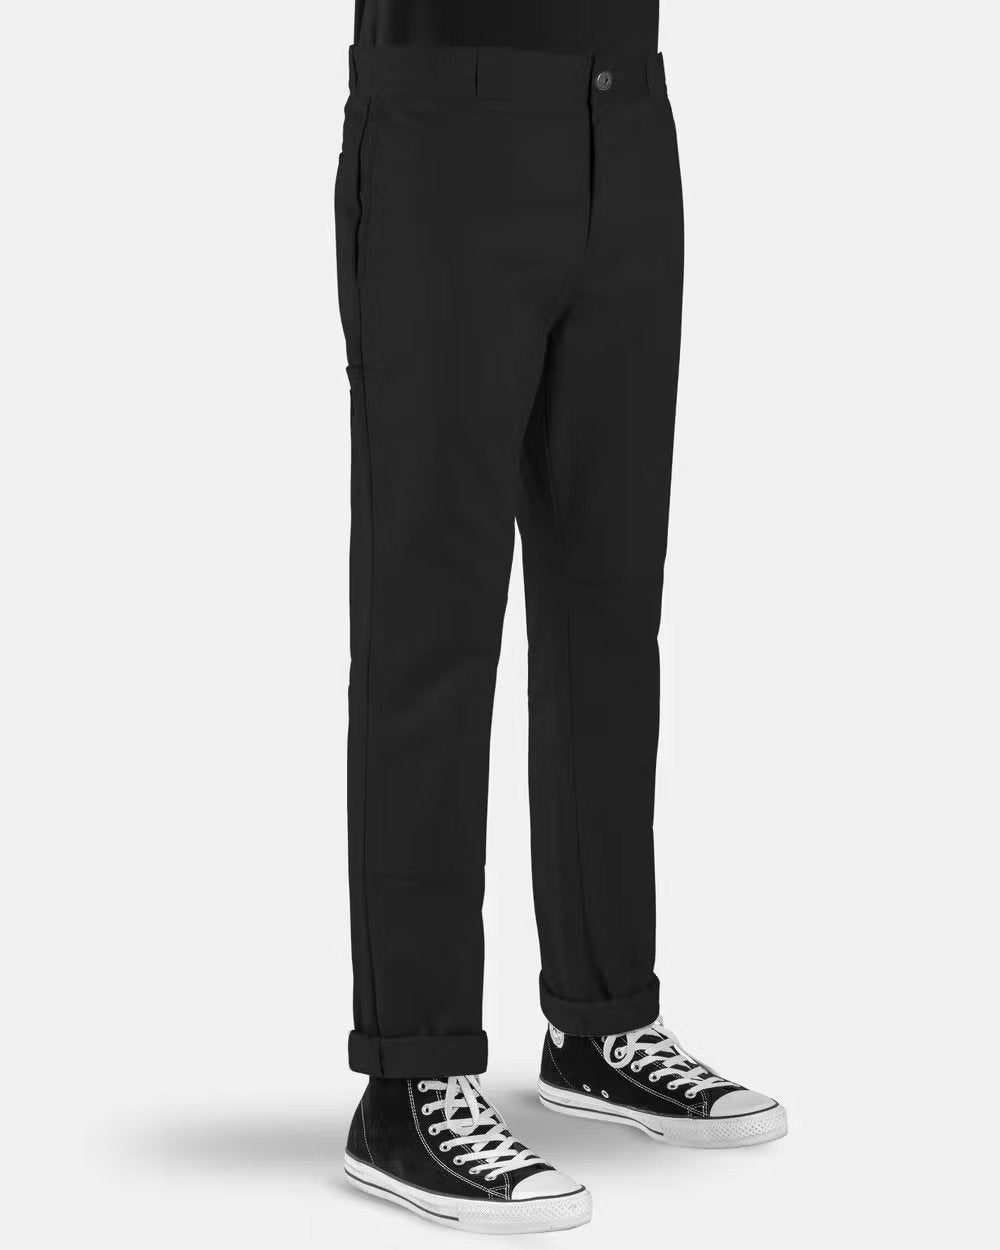 DICKIES 918 Slim Fit Double Knee Pants - Black - VENUE.